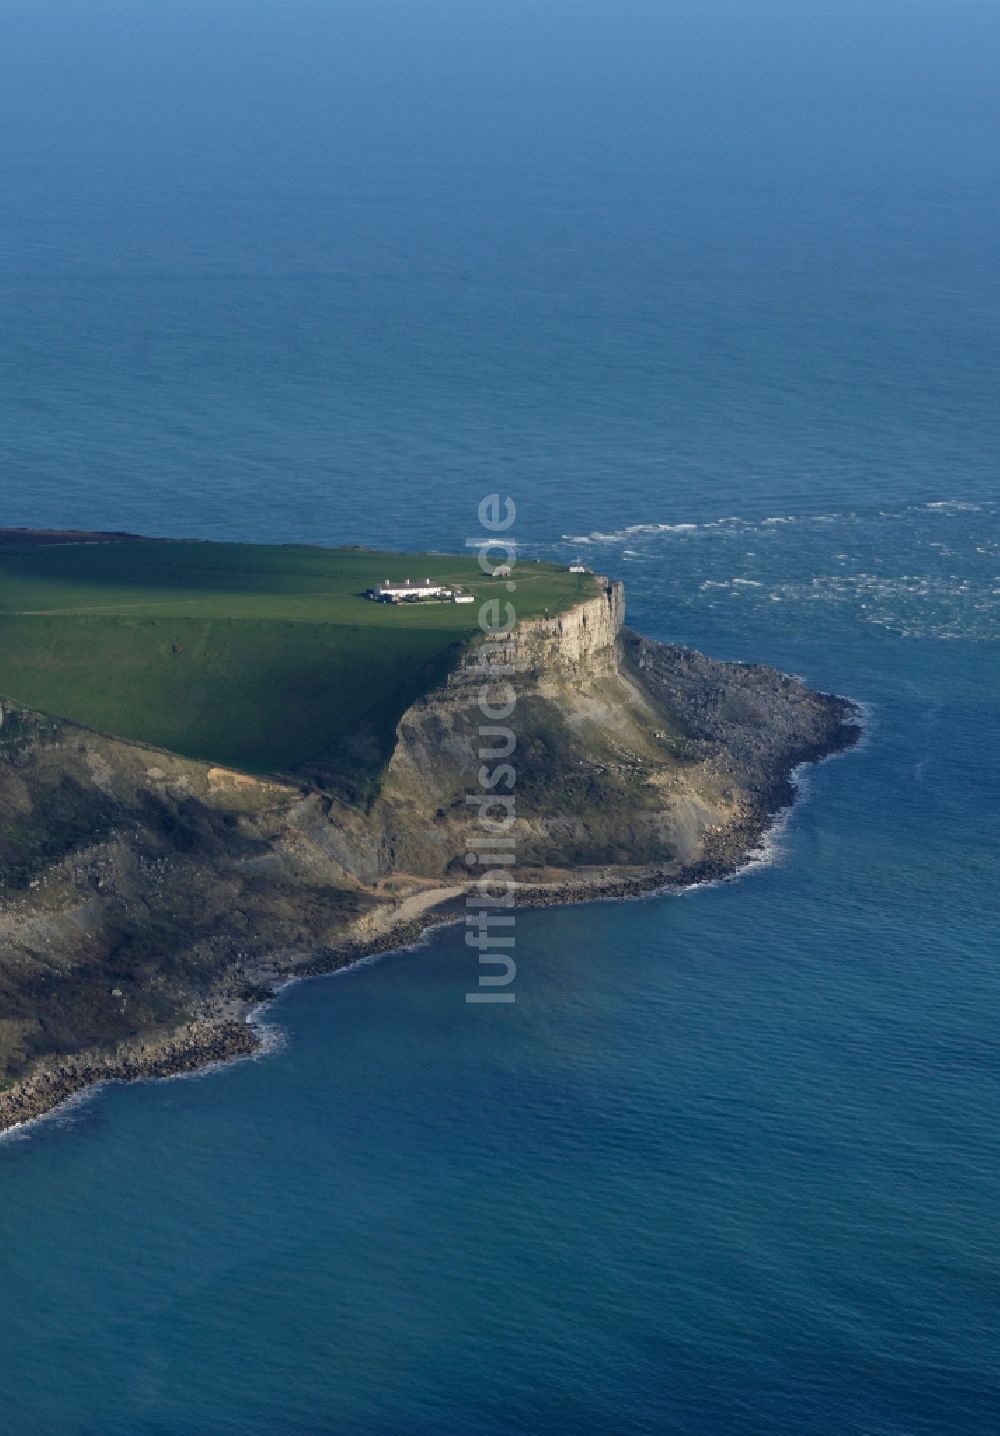 Luftbild Worth Matravers - Küsten- Landschaft an der Steilküste des Ärmelkanal St Aldheim's Head in Worth Matravers in England, Vereinigtes Königreich